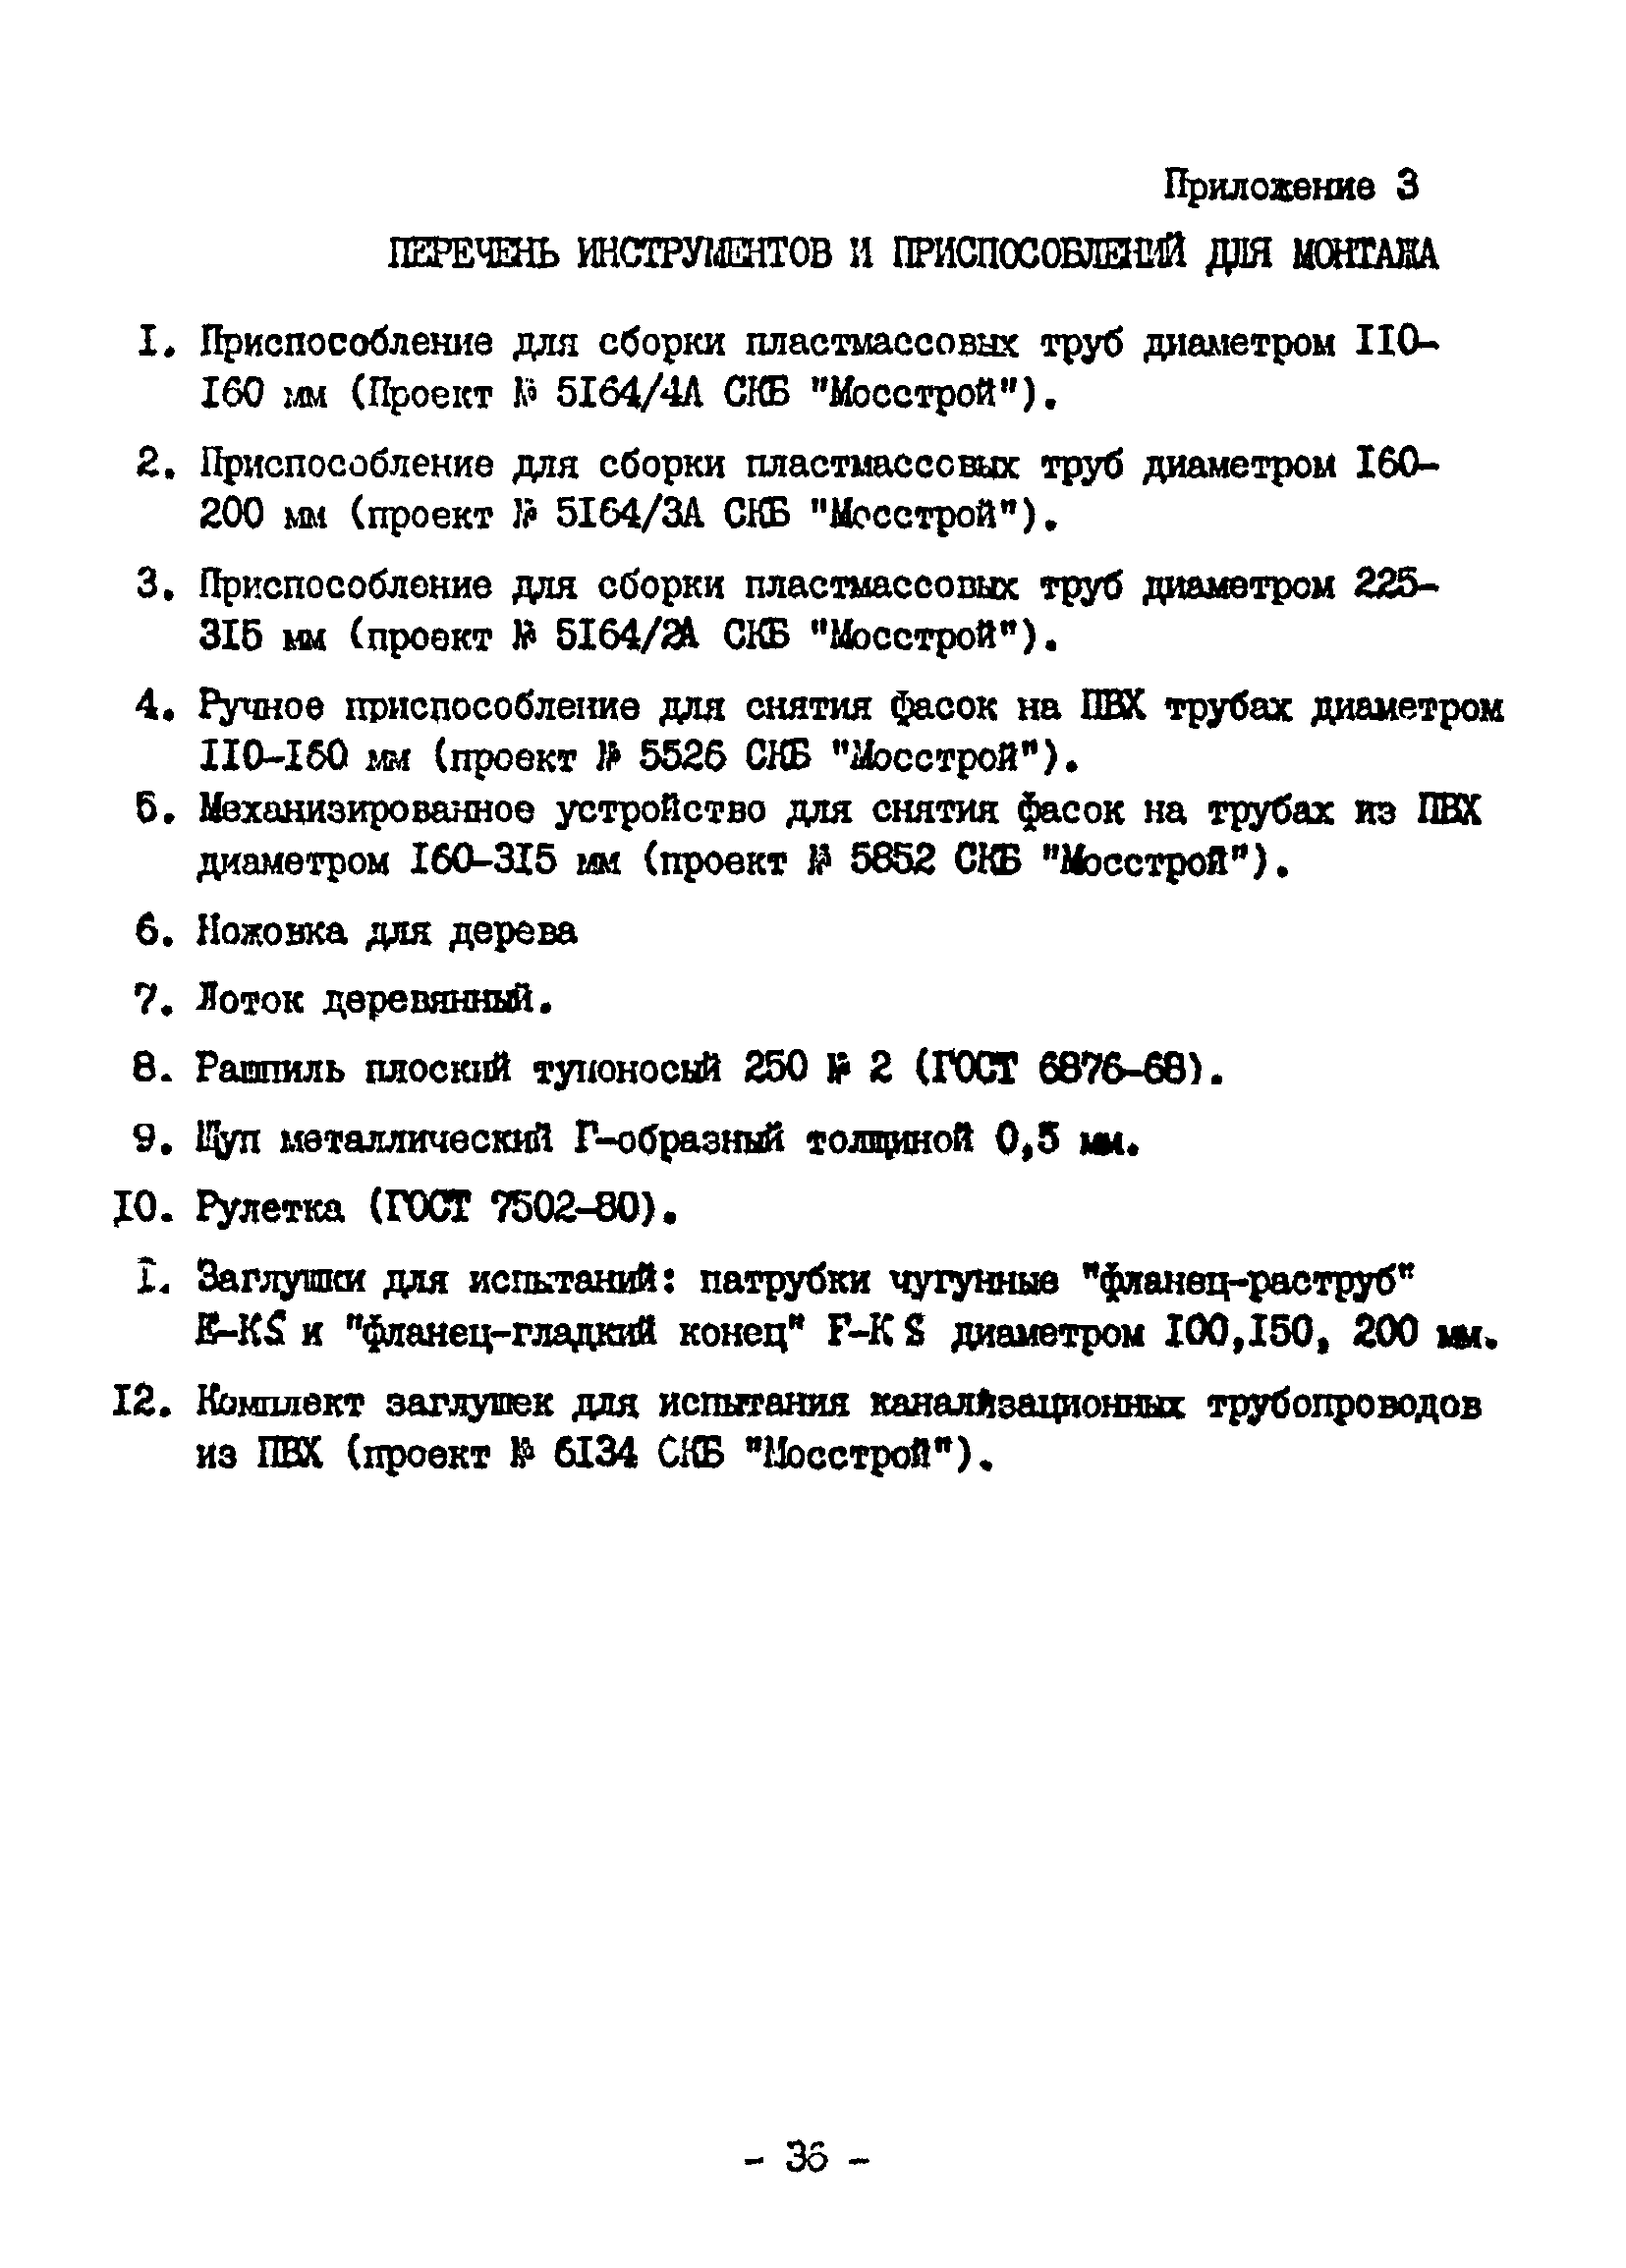 ВСН 20-95